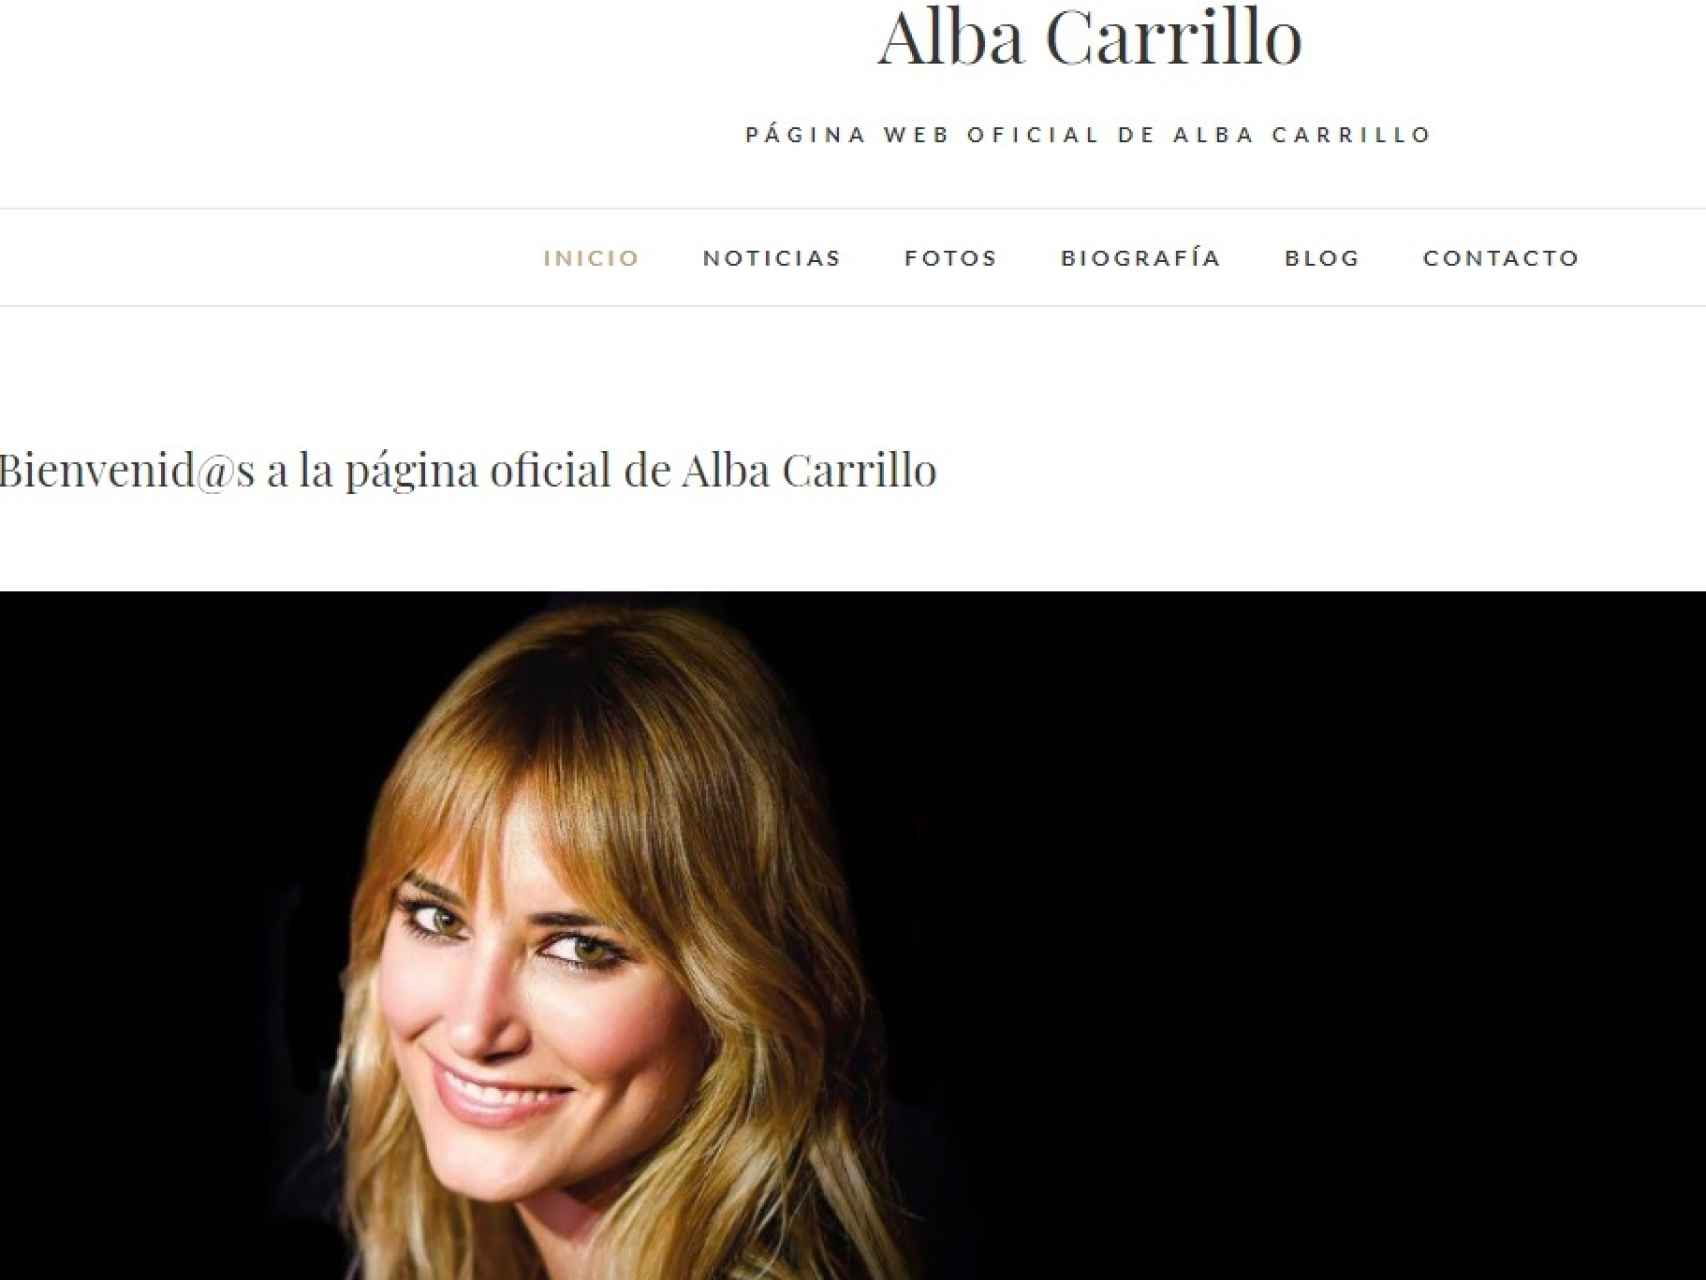 Nueva página web oficial de Alba Carrillo.